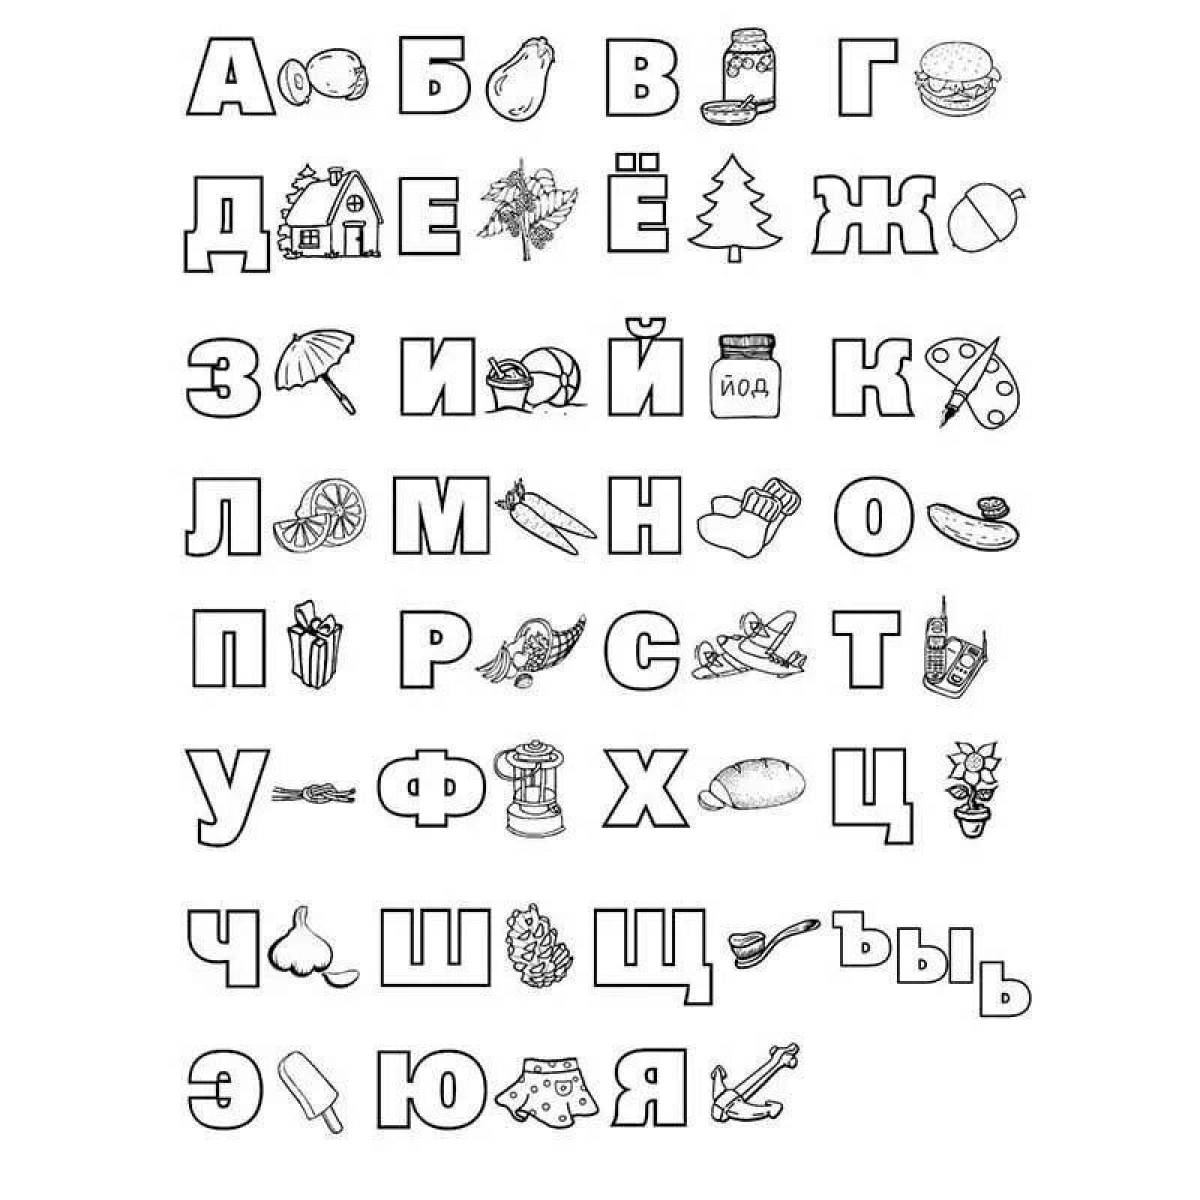 Увлекательная раскраска русских букв